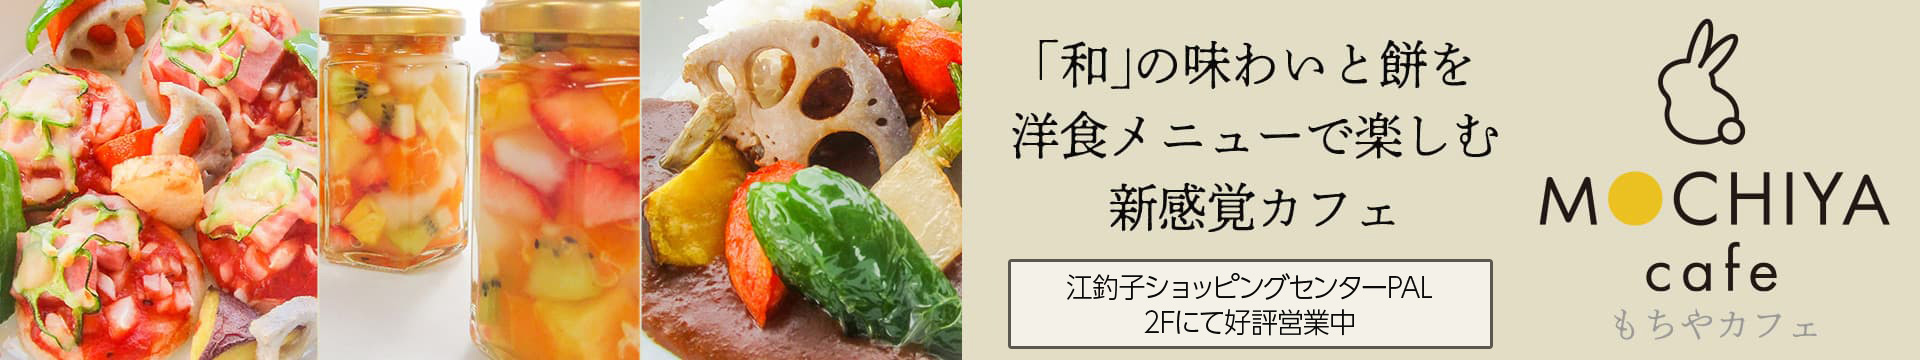 「和」の味わいと餅を洋食メニューで楽しむ新感覚カフェ|MOCHIYA cafe(もちやカフェ)